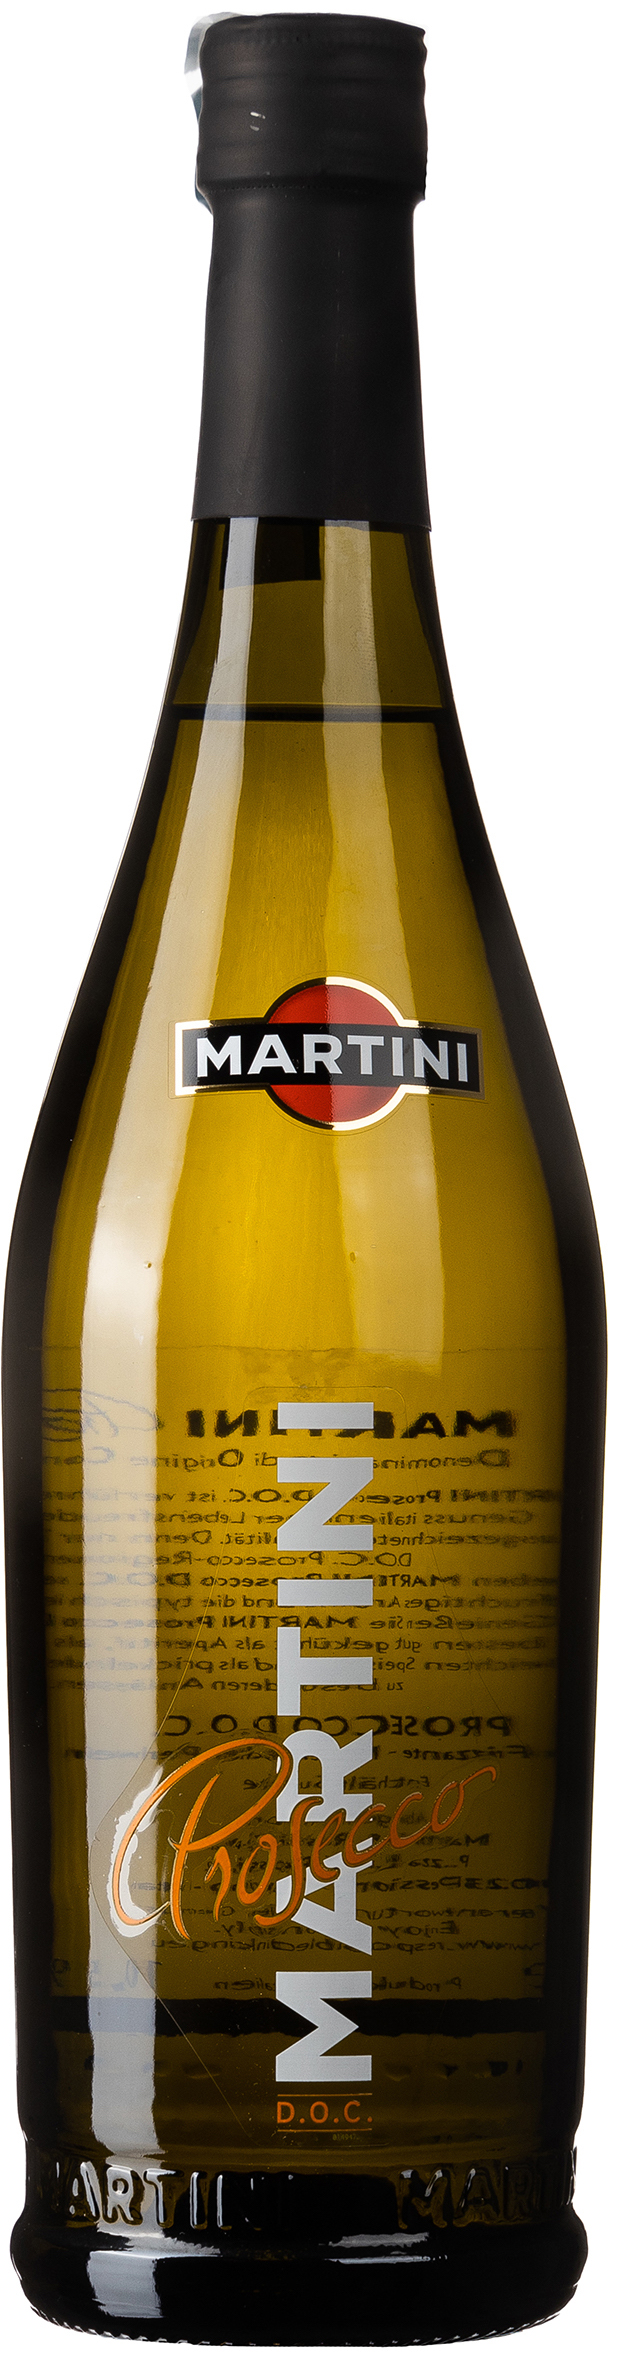 Martini Prosecco D.O.C. Frizzante 10,5% vol. 0,75L